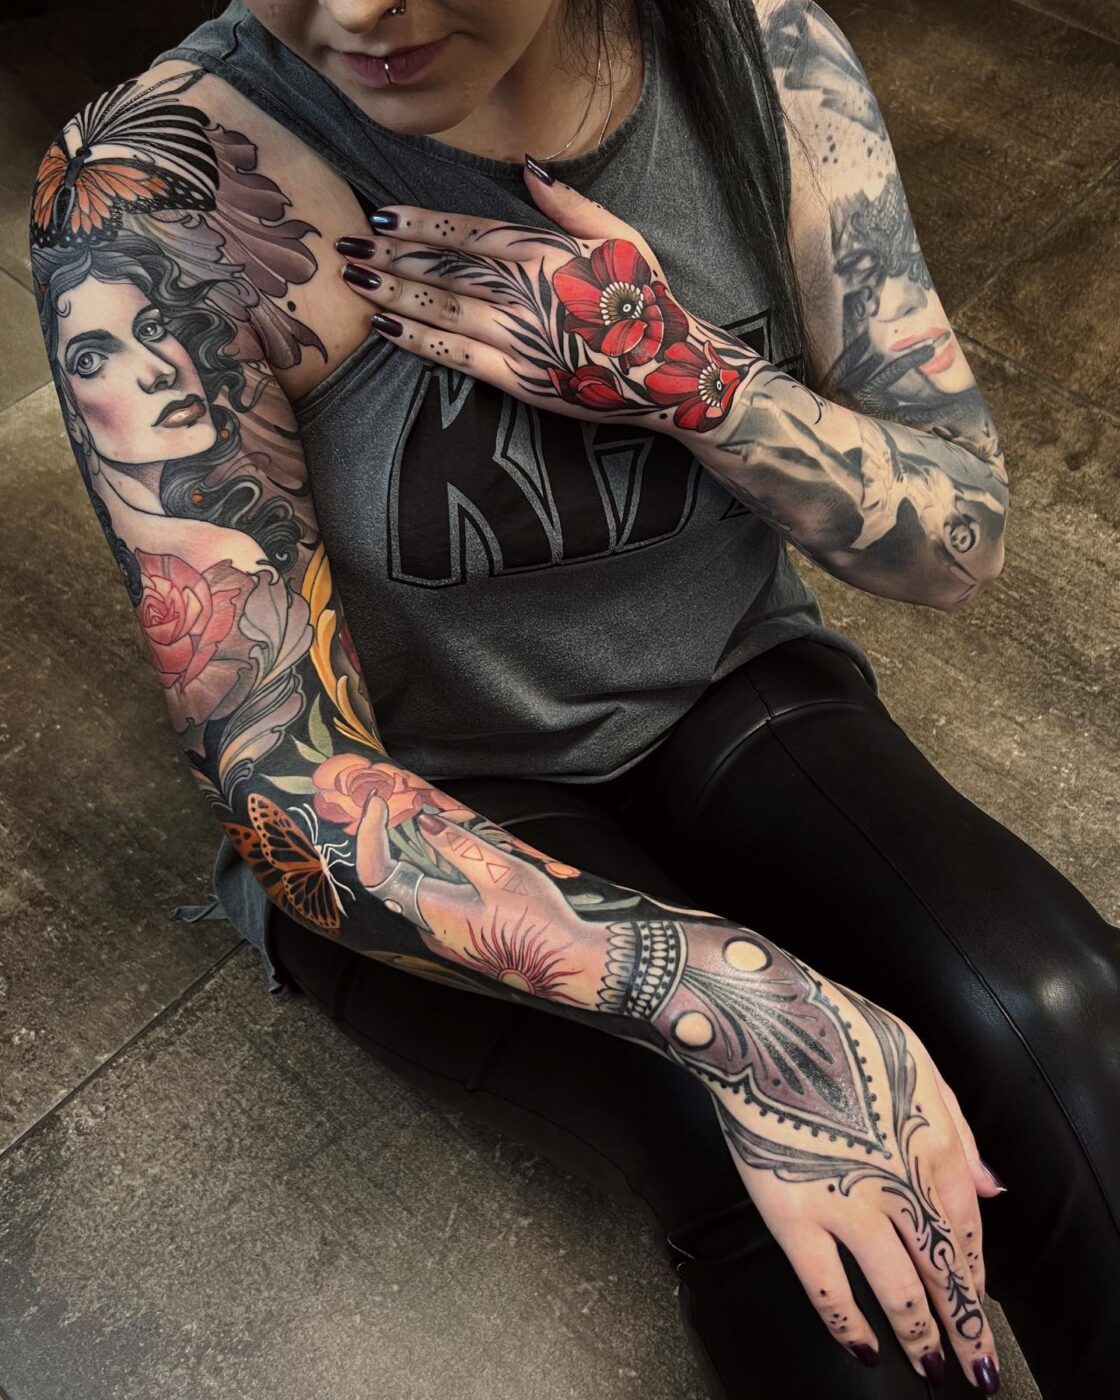 Tattoo Artist in United Kingdom Source @tattooassist via Instagram